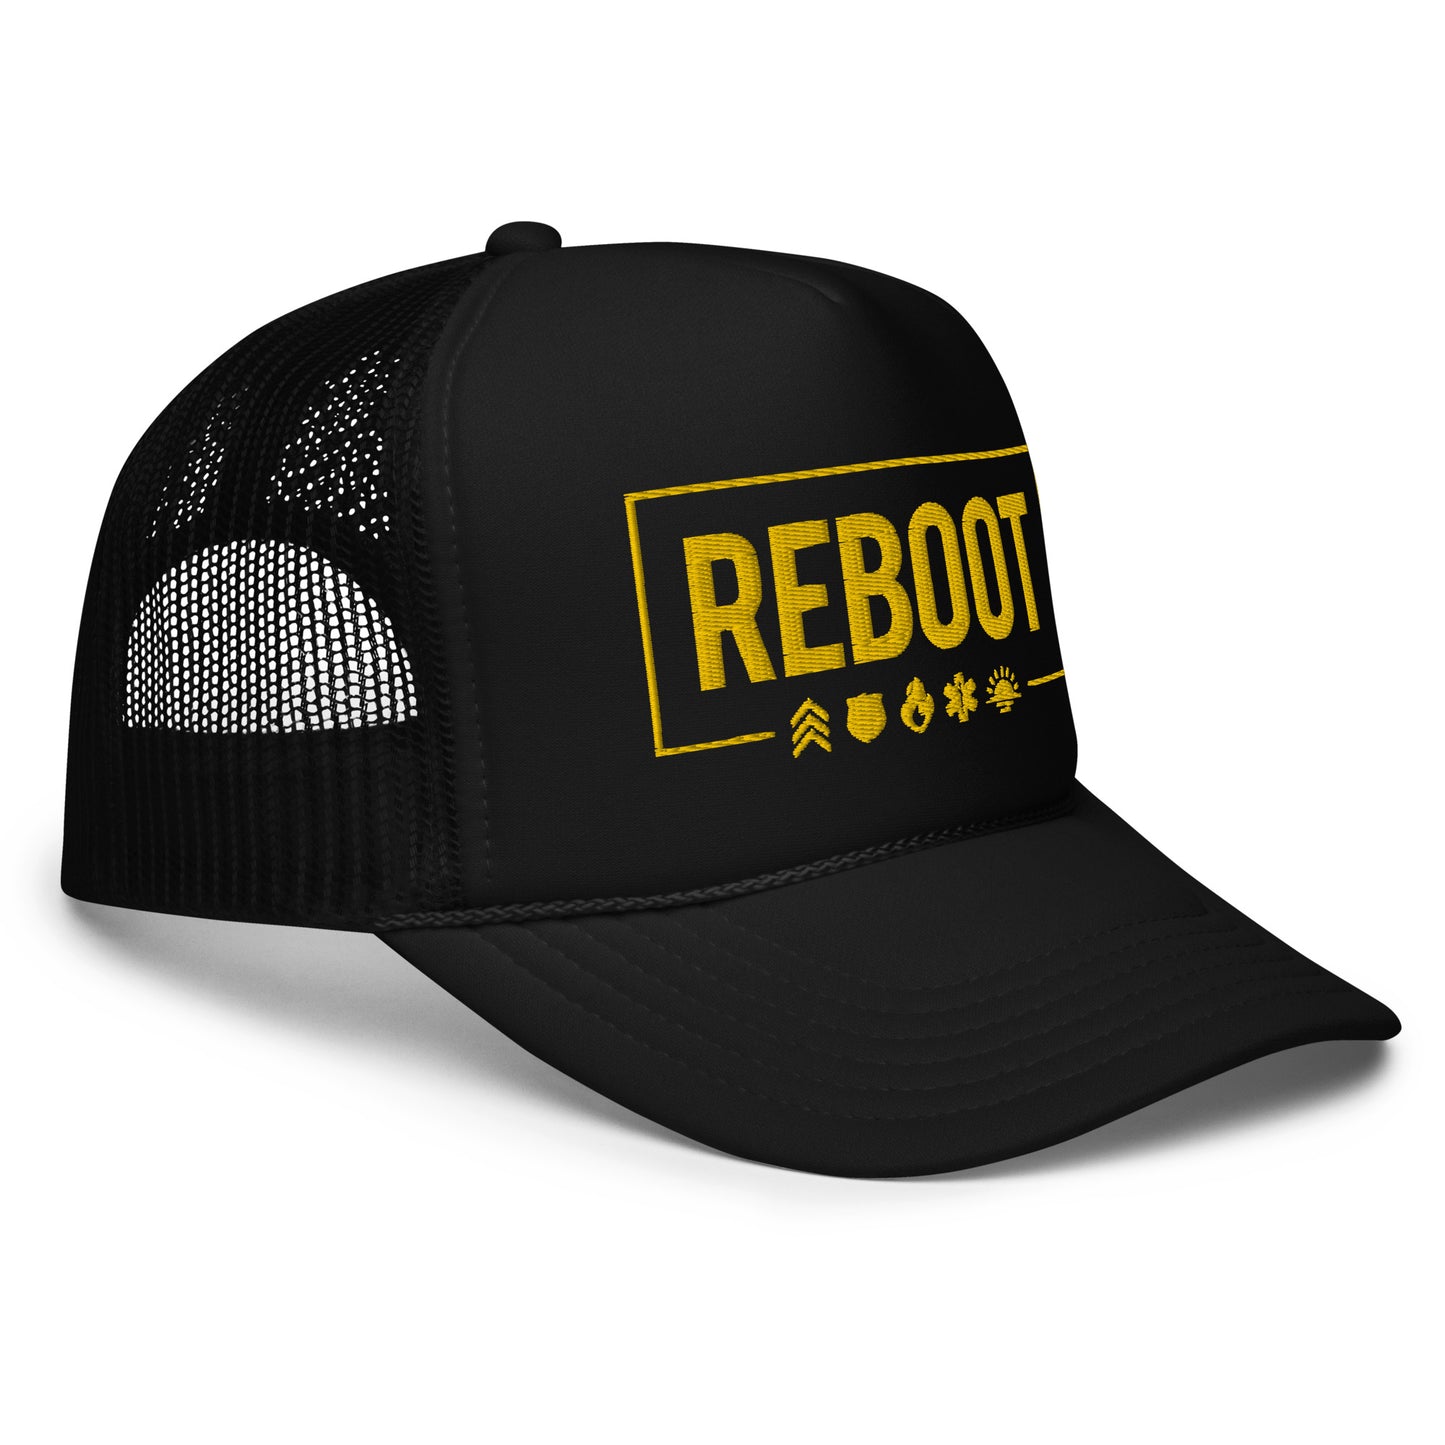 REBOOT Yellow Border Foam trucker hat